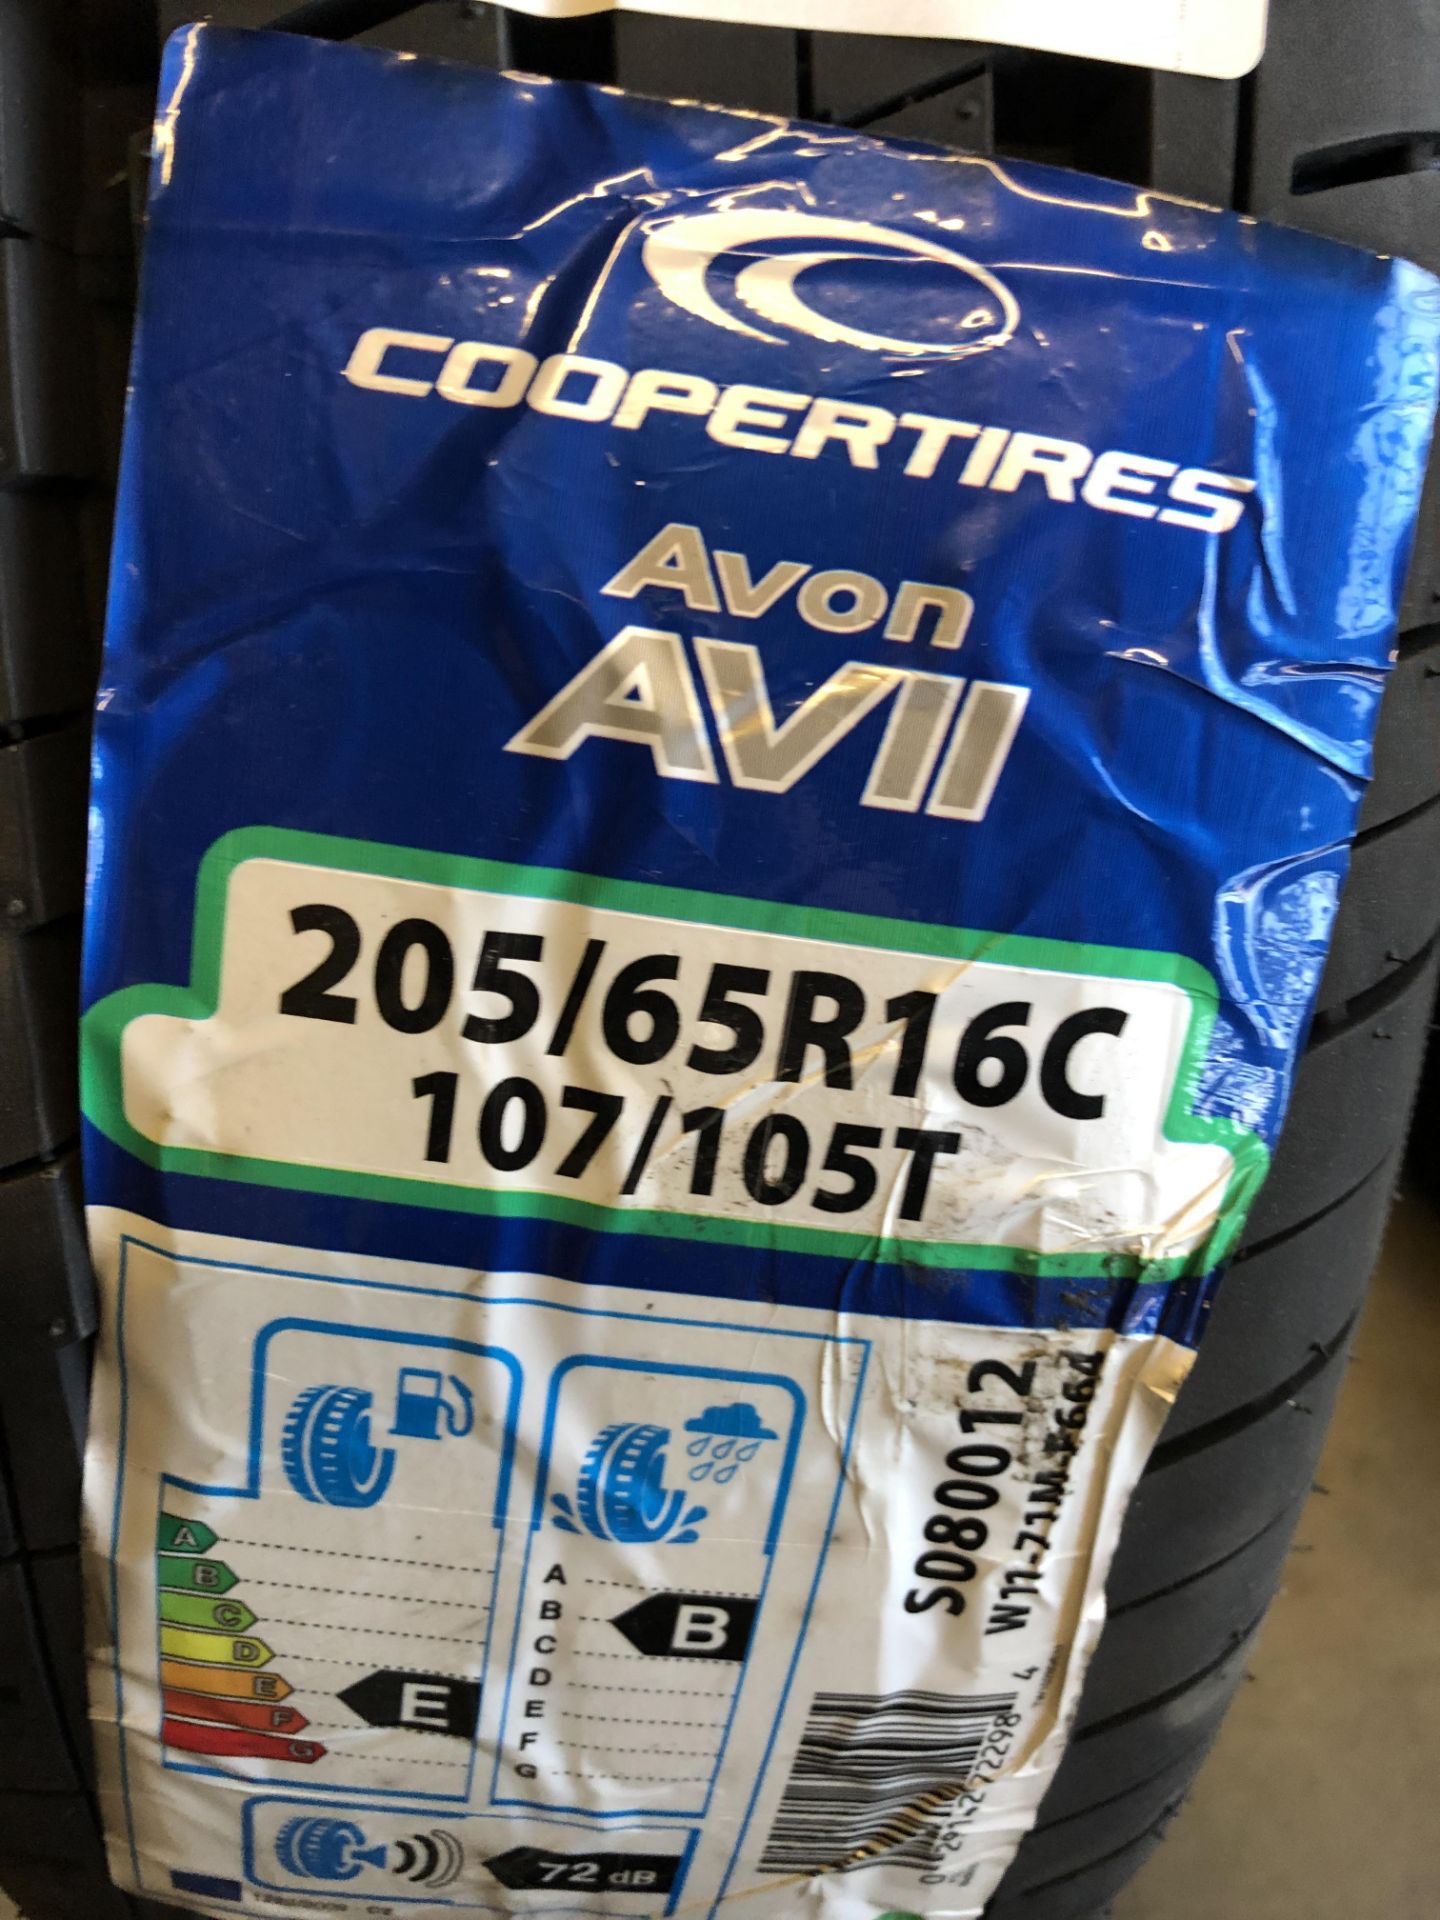 2: Coopertires Avon AVII 205/65R16C 107/105T Tyres (Please Note: Items located in Birmingham B6.